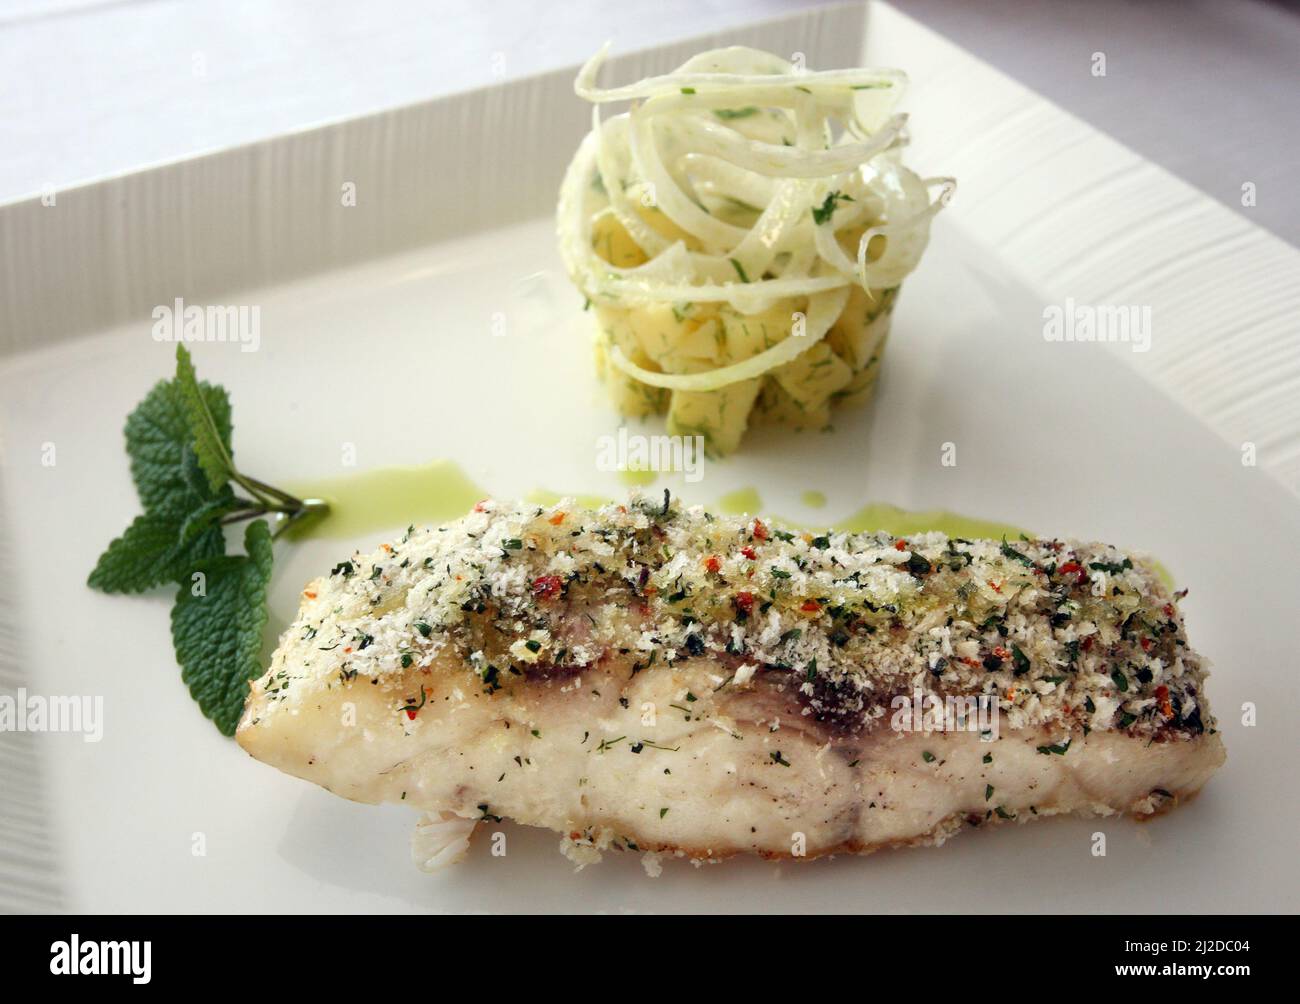 Piatti turchi tradizionali "pesce stuffato" con verdure sul piatto della cena. Foto Stock